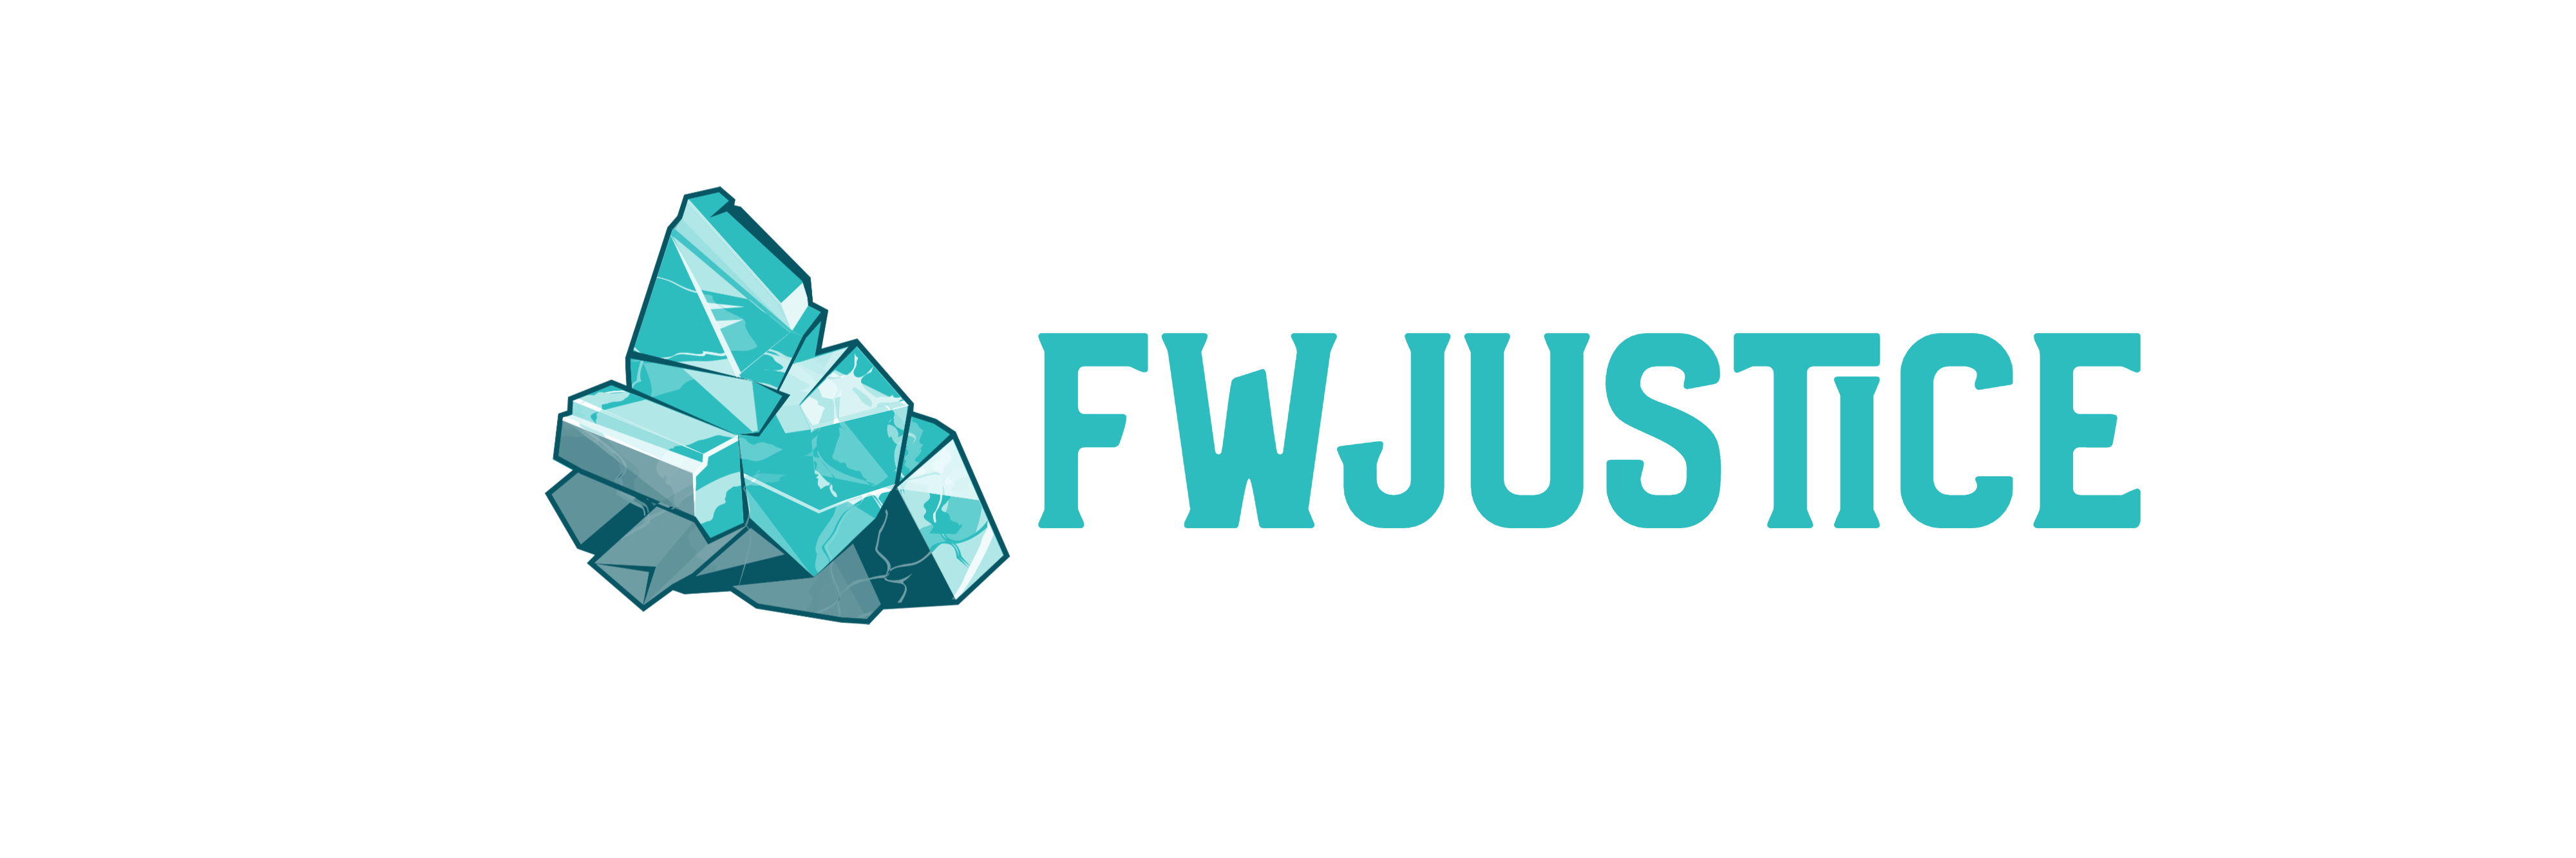 logo-fw-justice